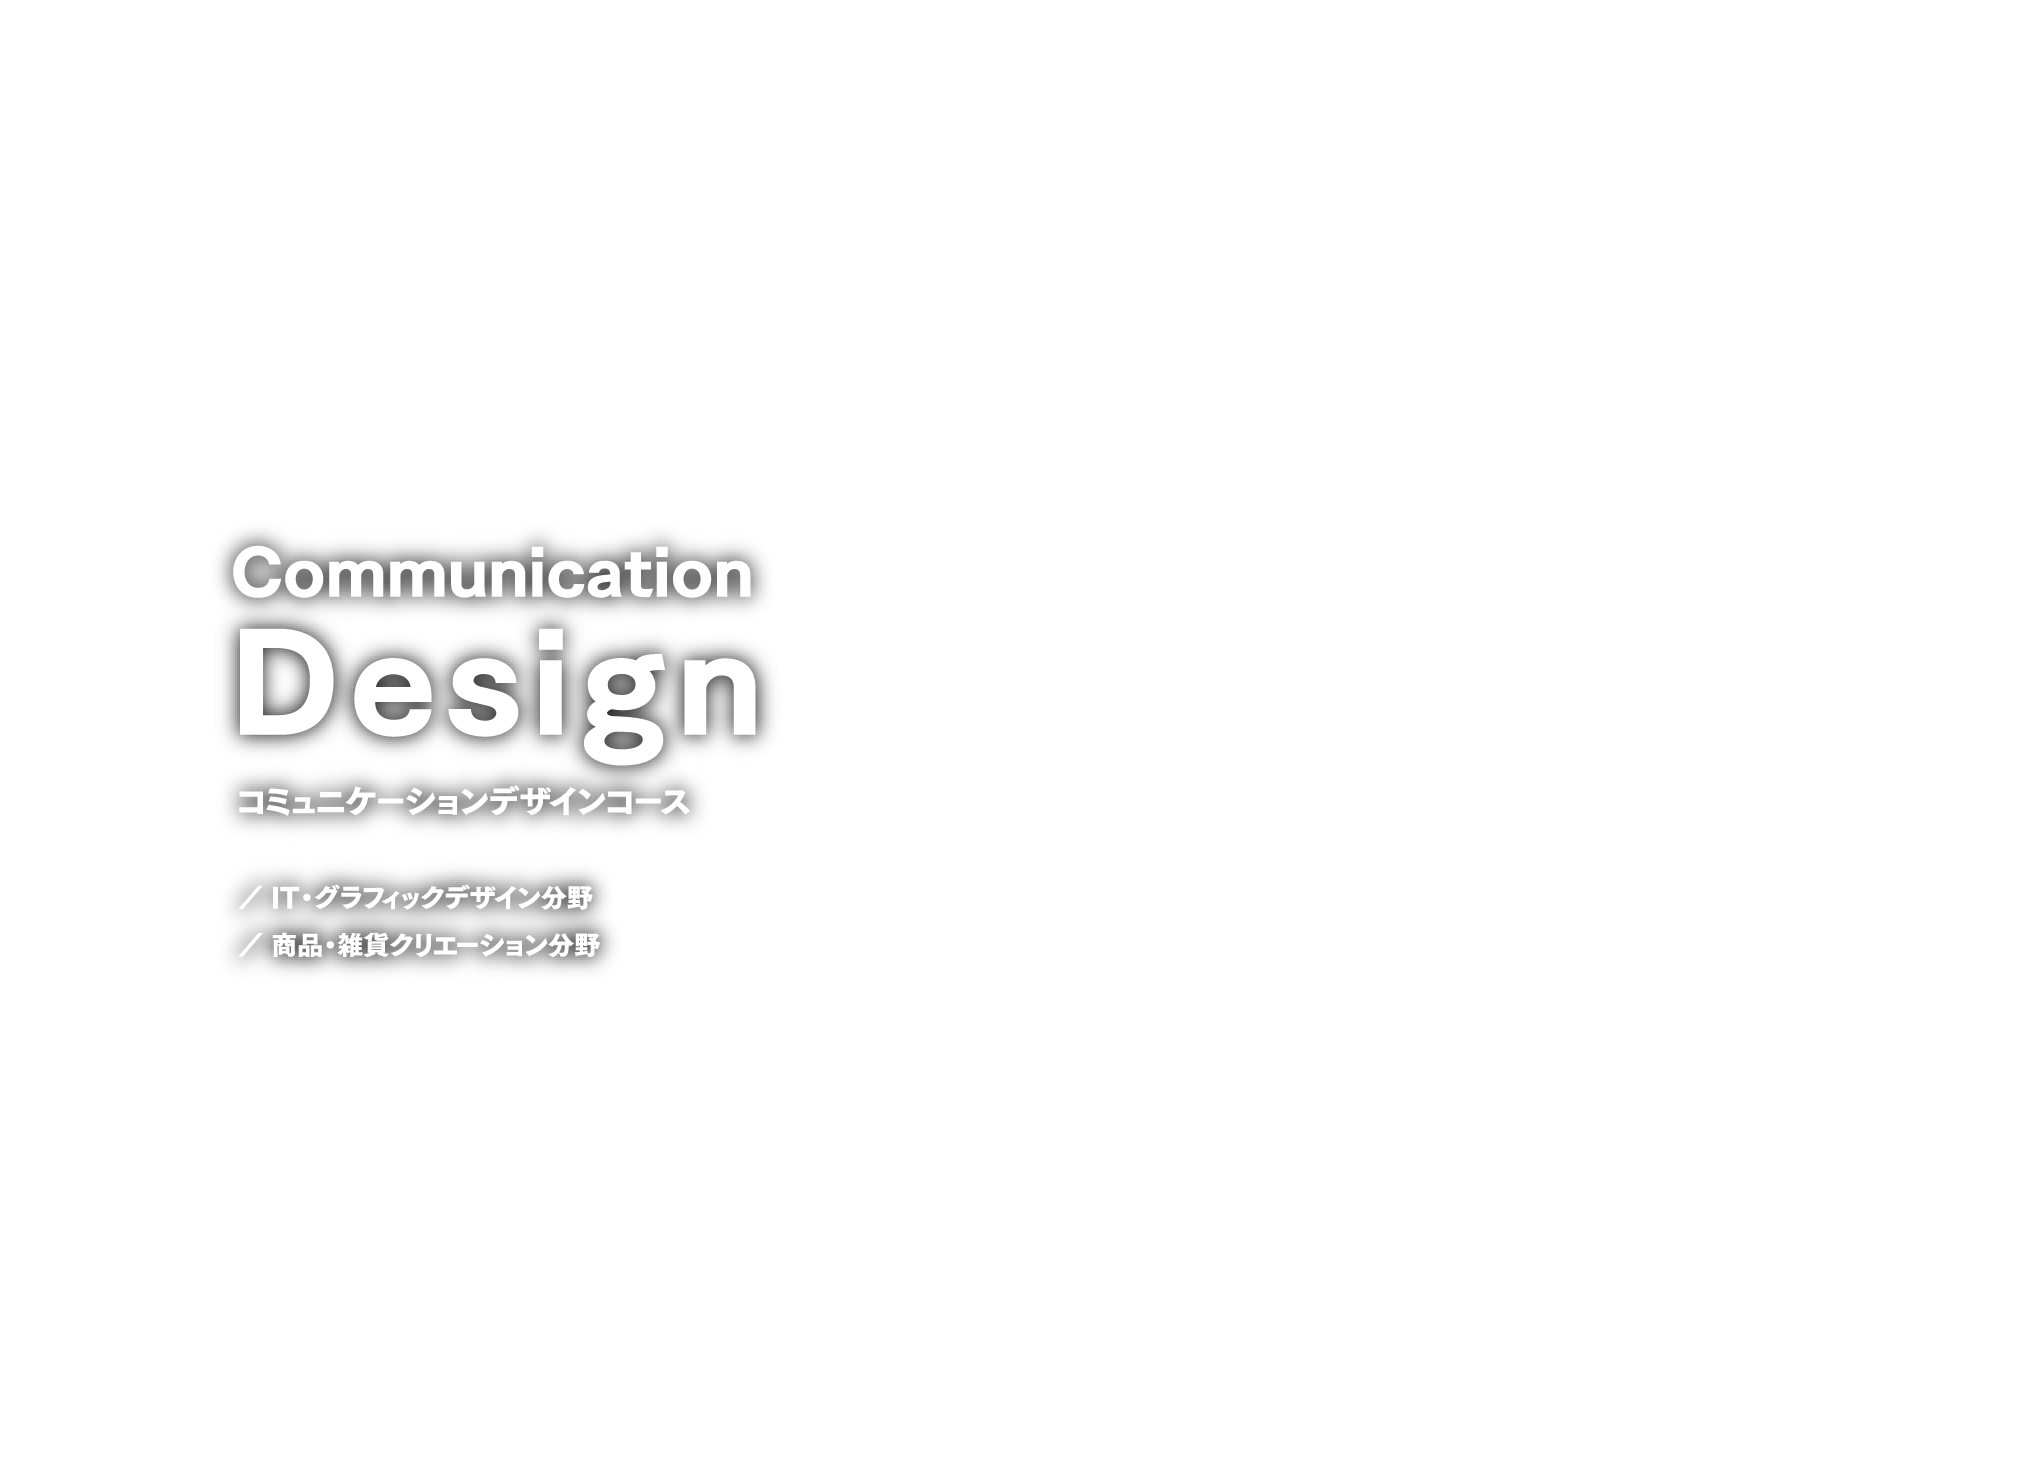 コミュニケーションデザインコース